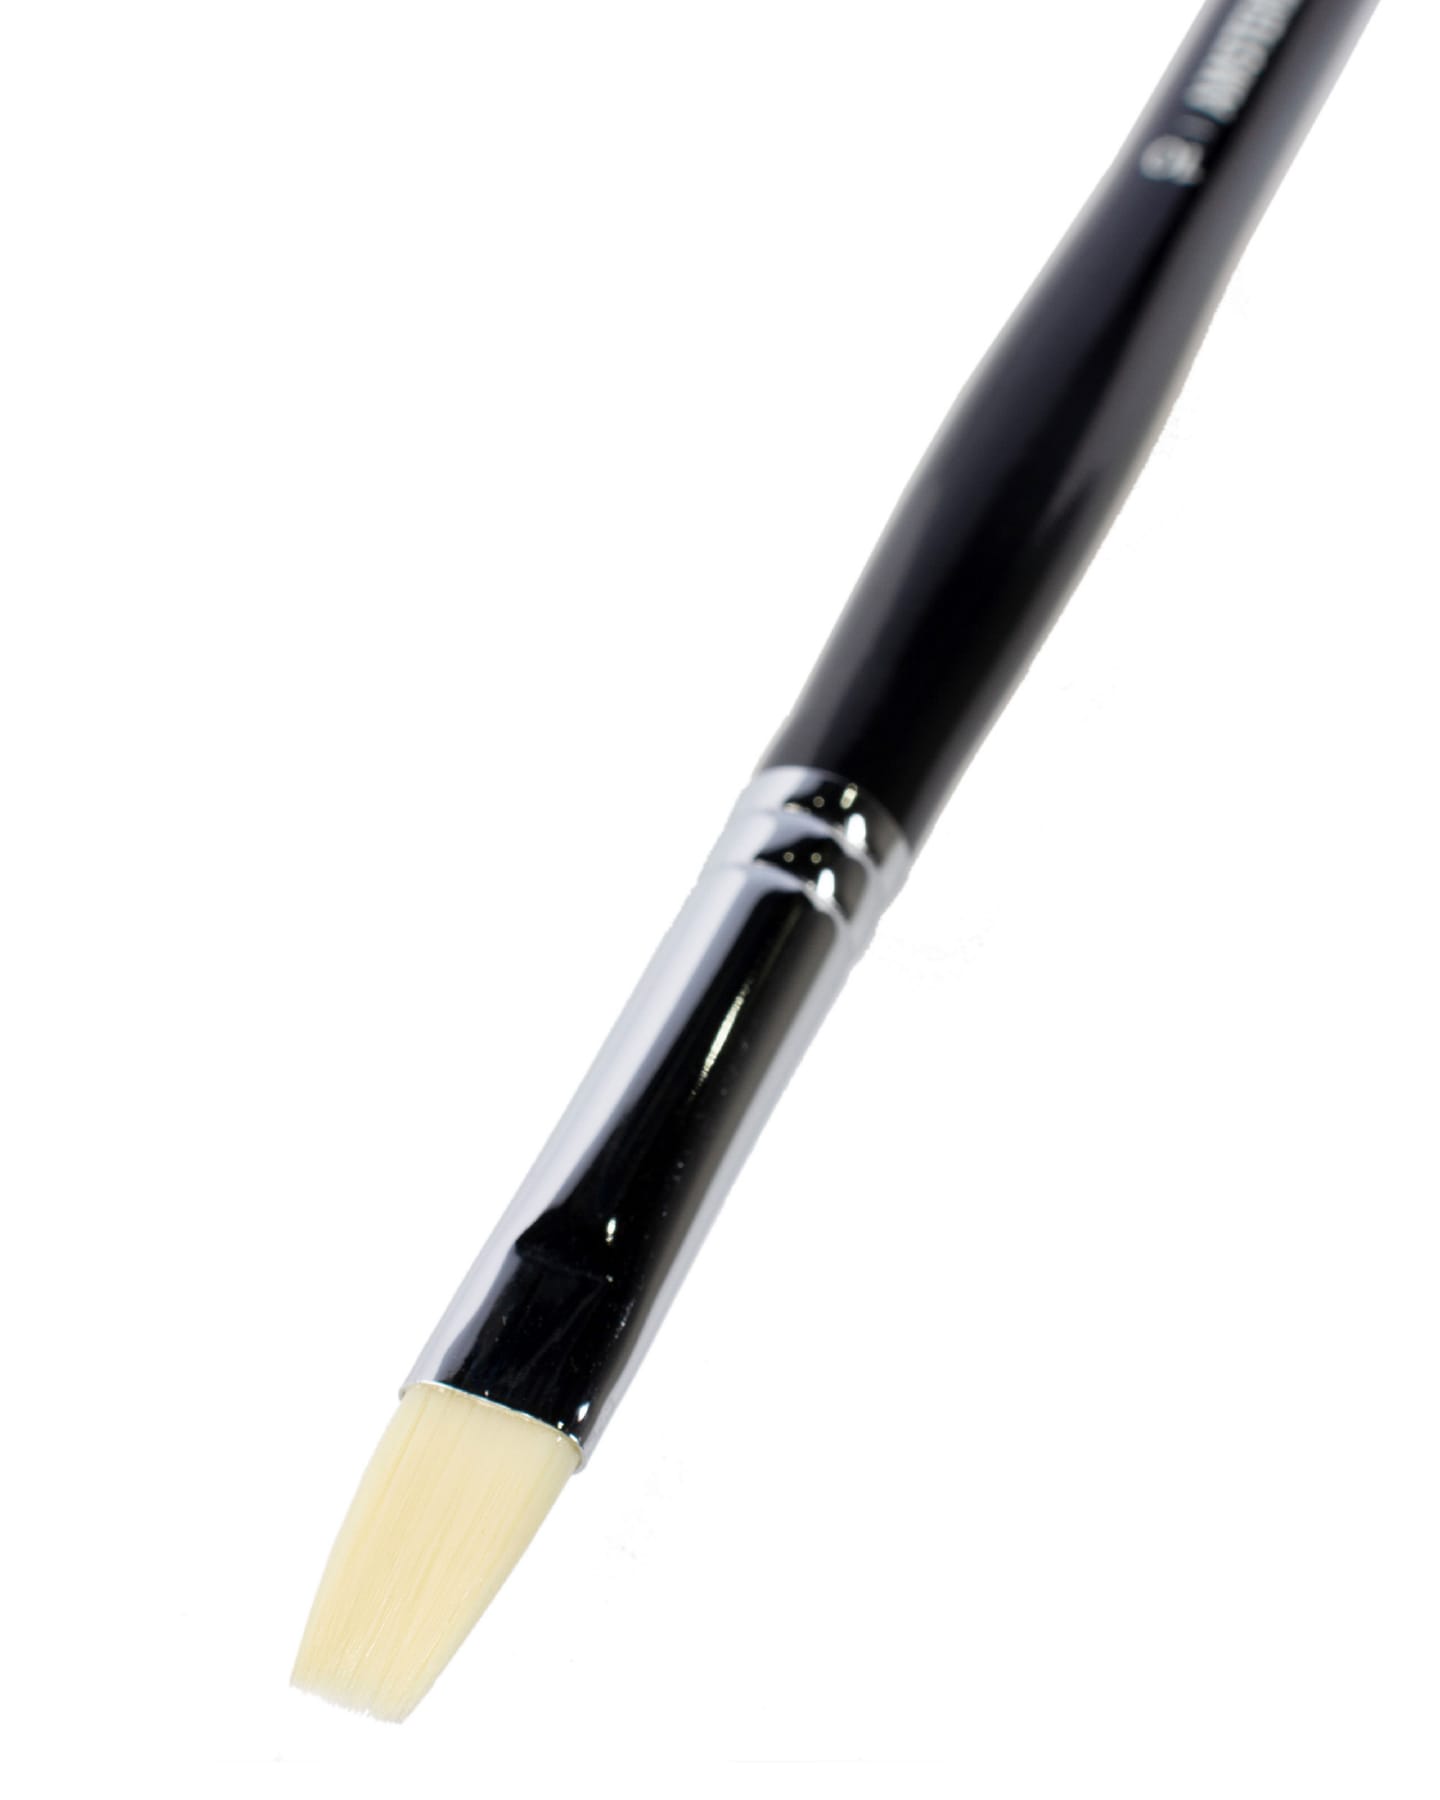 Кисть для акрила Amsterdam 352 жесткая синтетика плоская ручка длинная 5 шт/упак 9 размеров в ассортименте